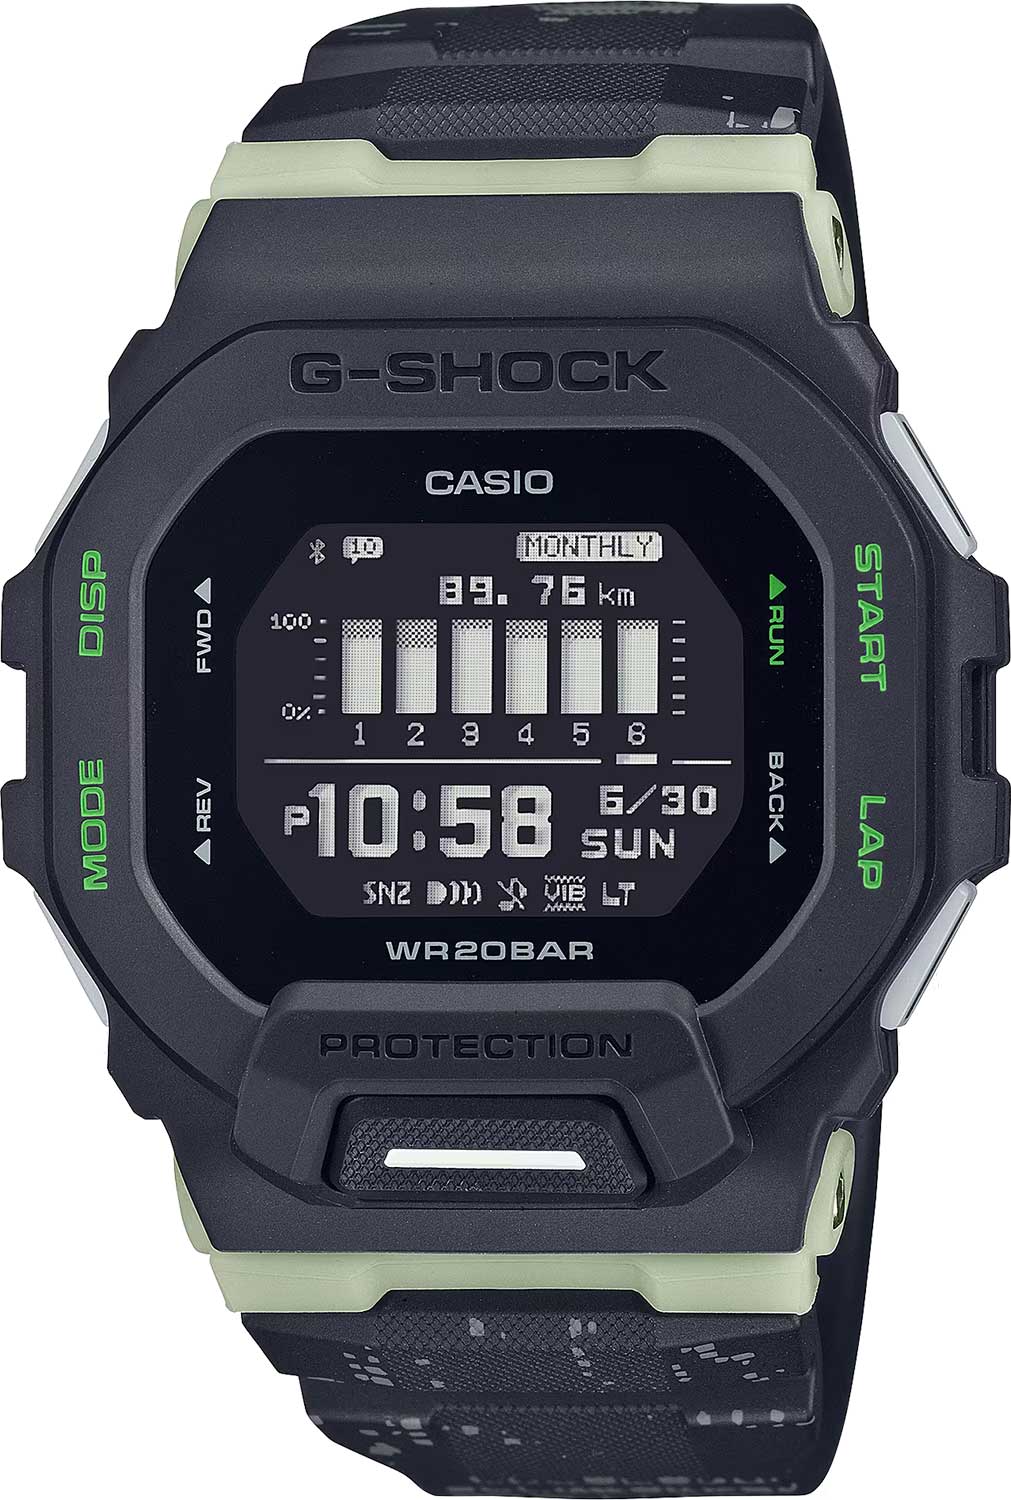     Casio G-SHOCK GBD-200LM-1E  